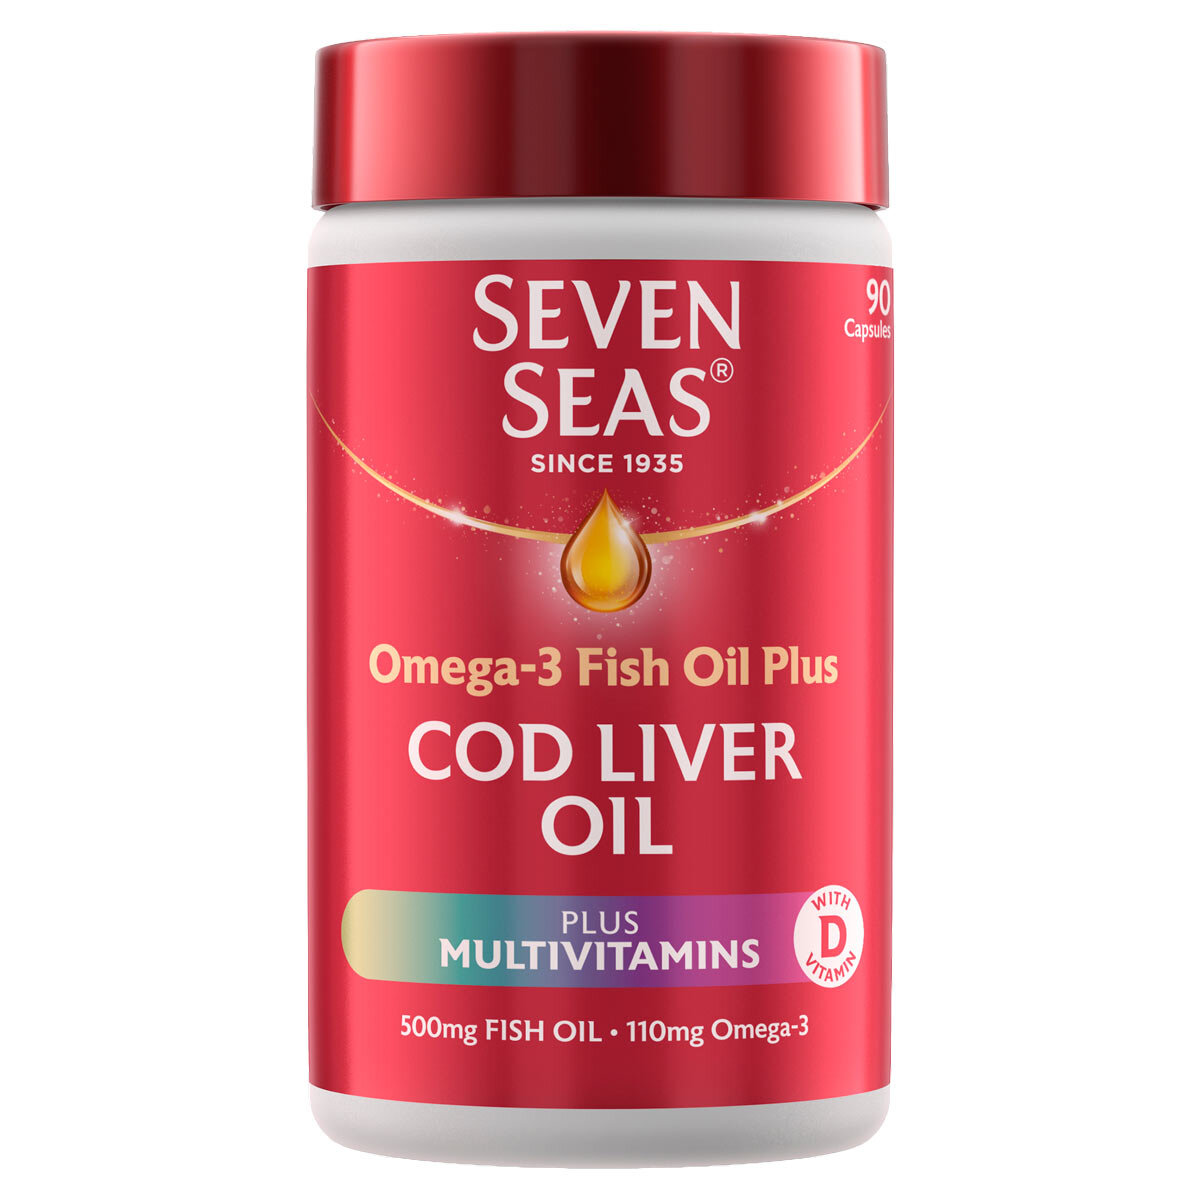 Seven Seas Cod Liver Oil Plus Multivitamins, 90 Count